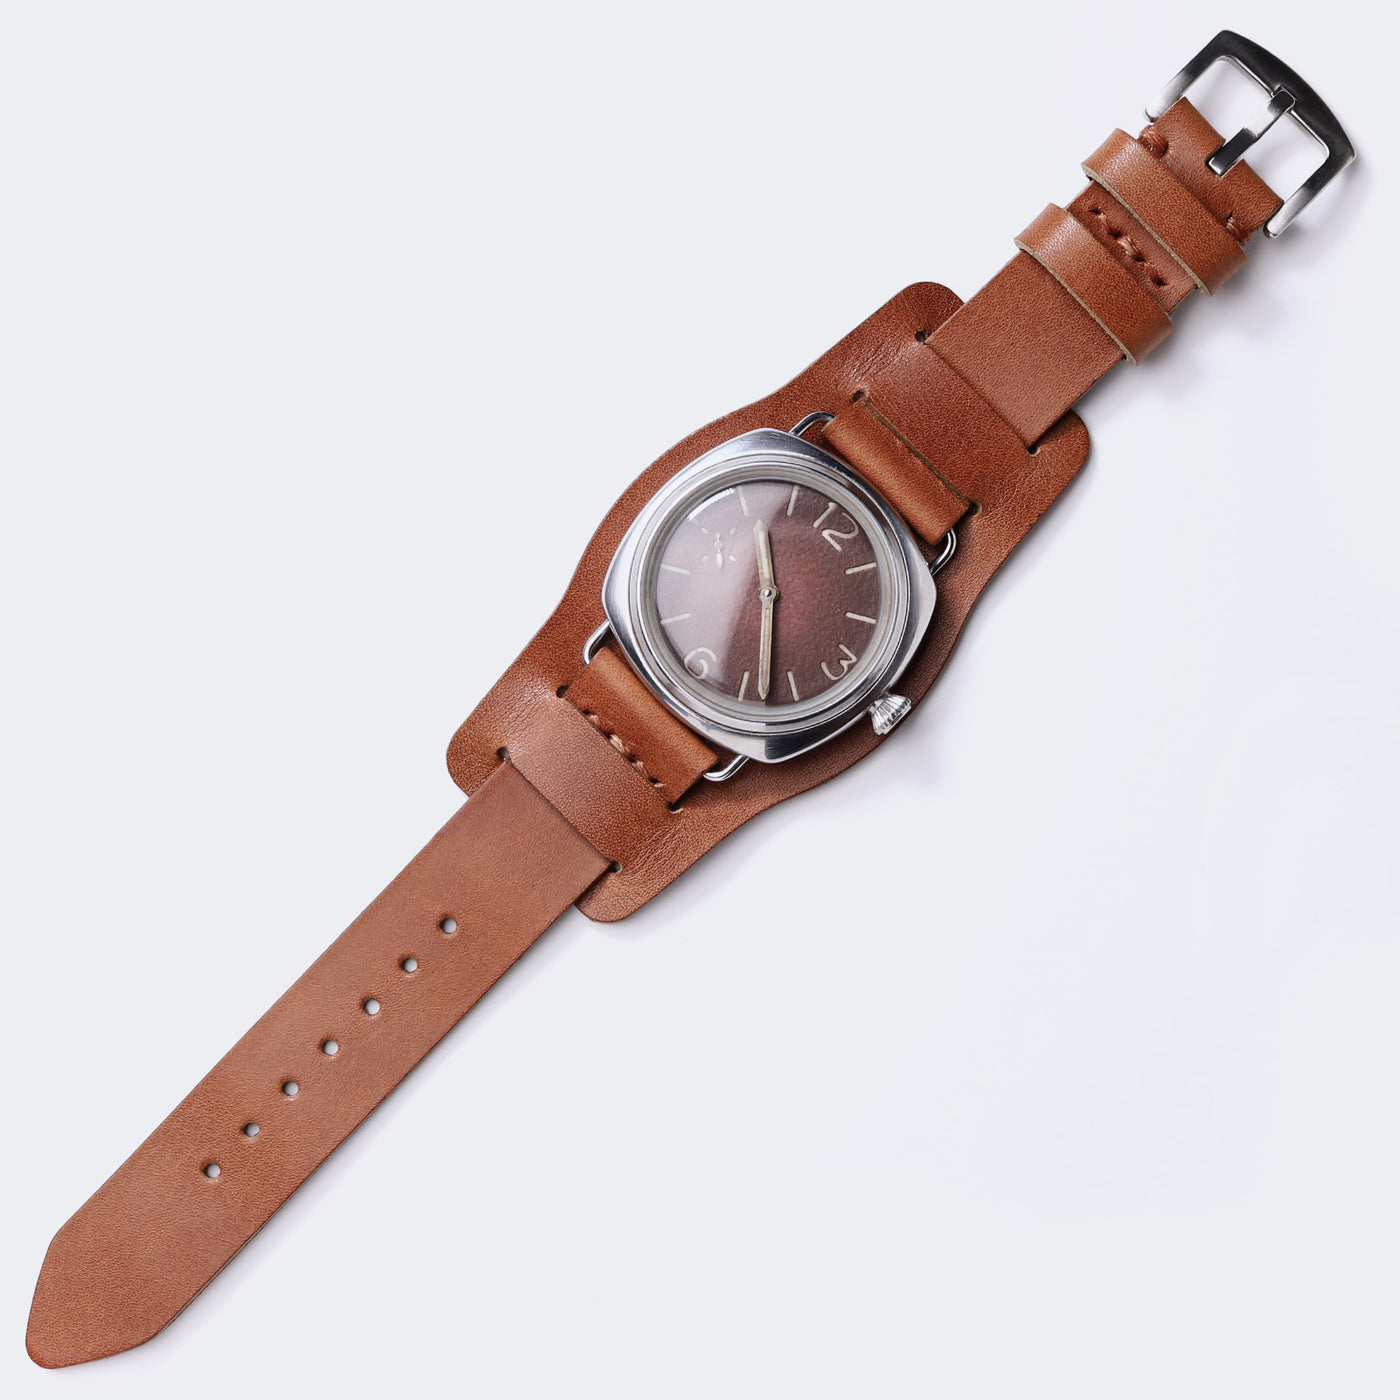 Leather Bund Watch Strap - Tan